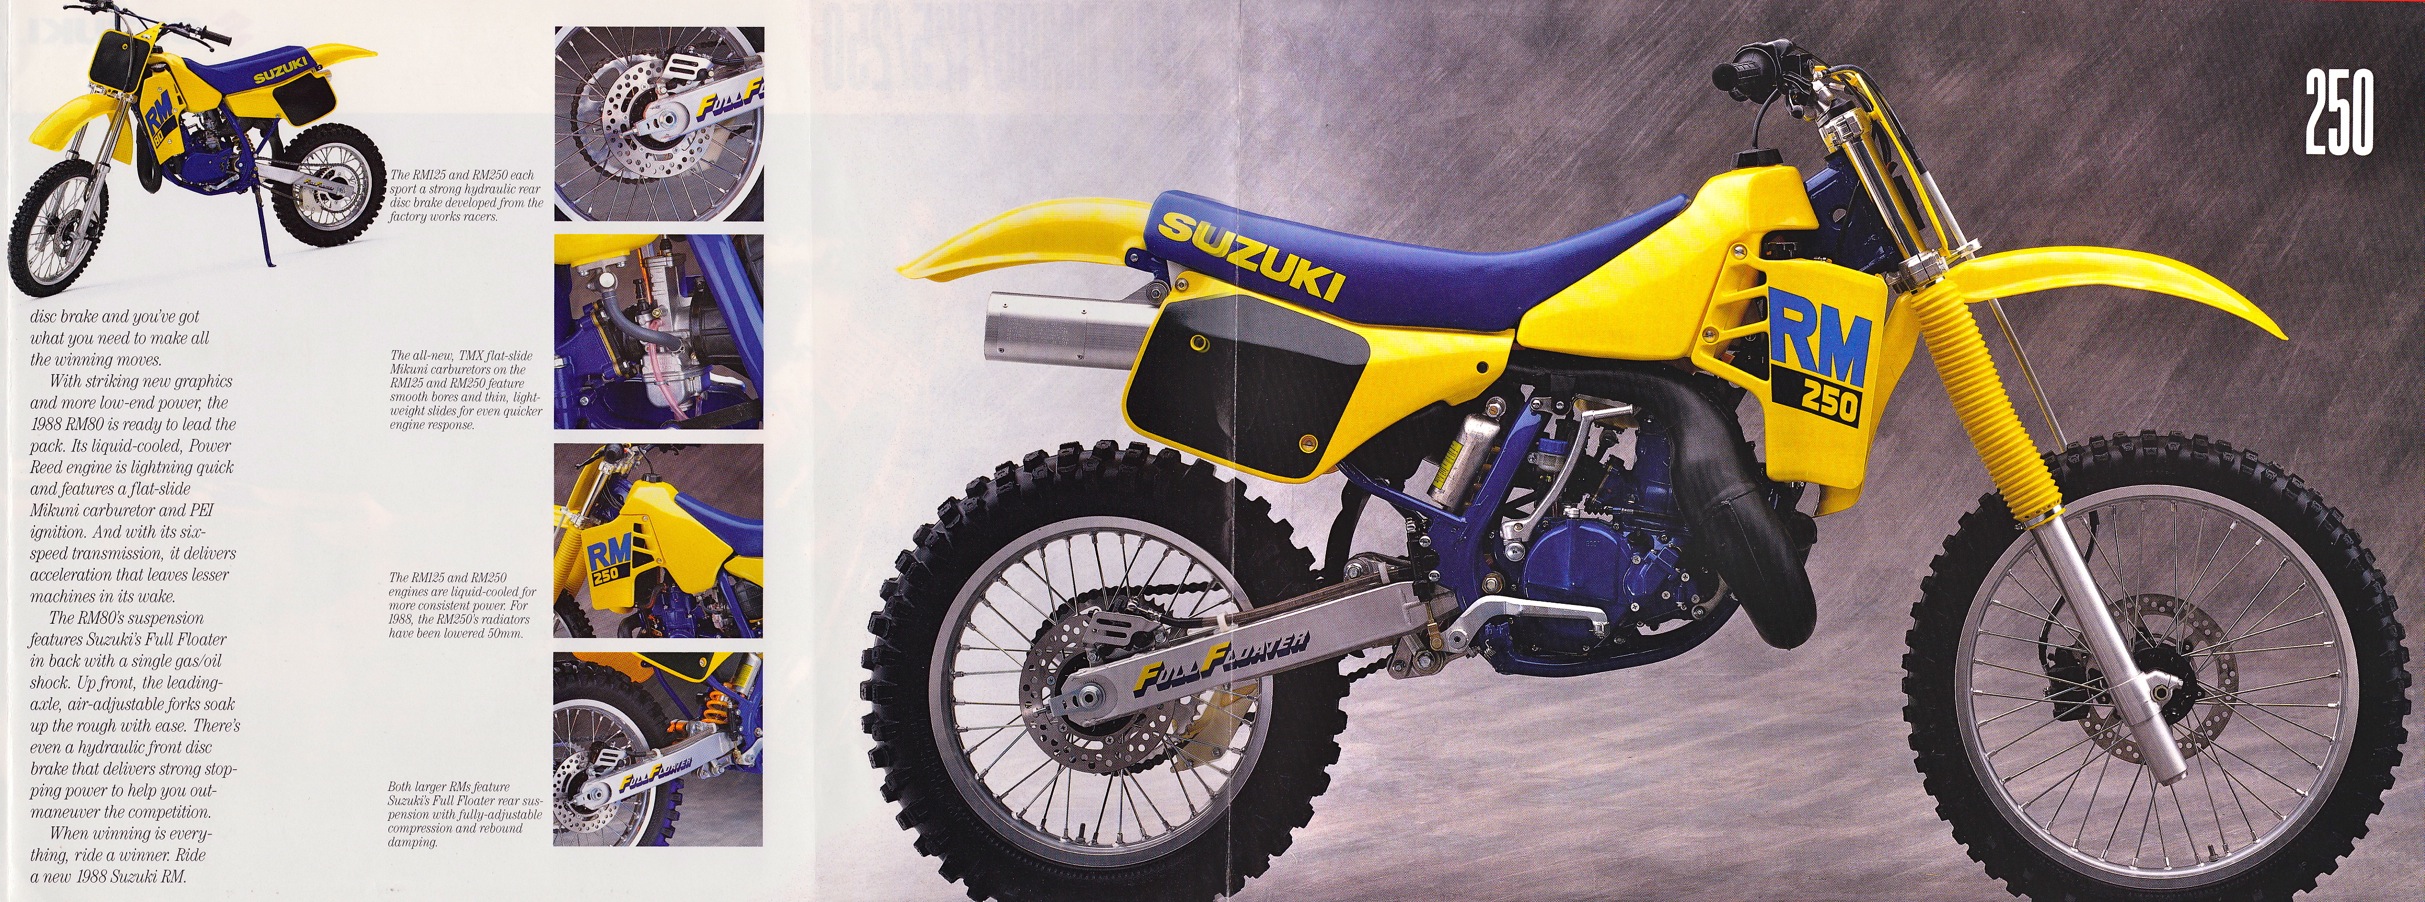 Мотоцикл Suzuki RM 250 1988